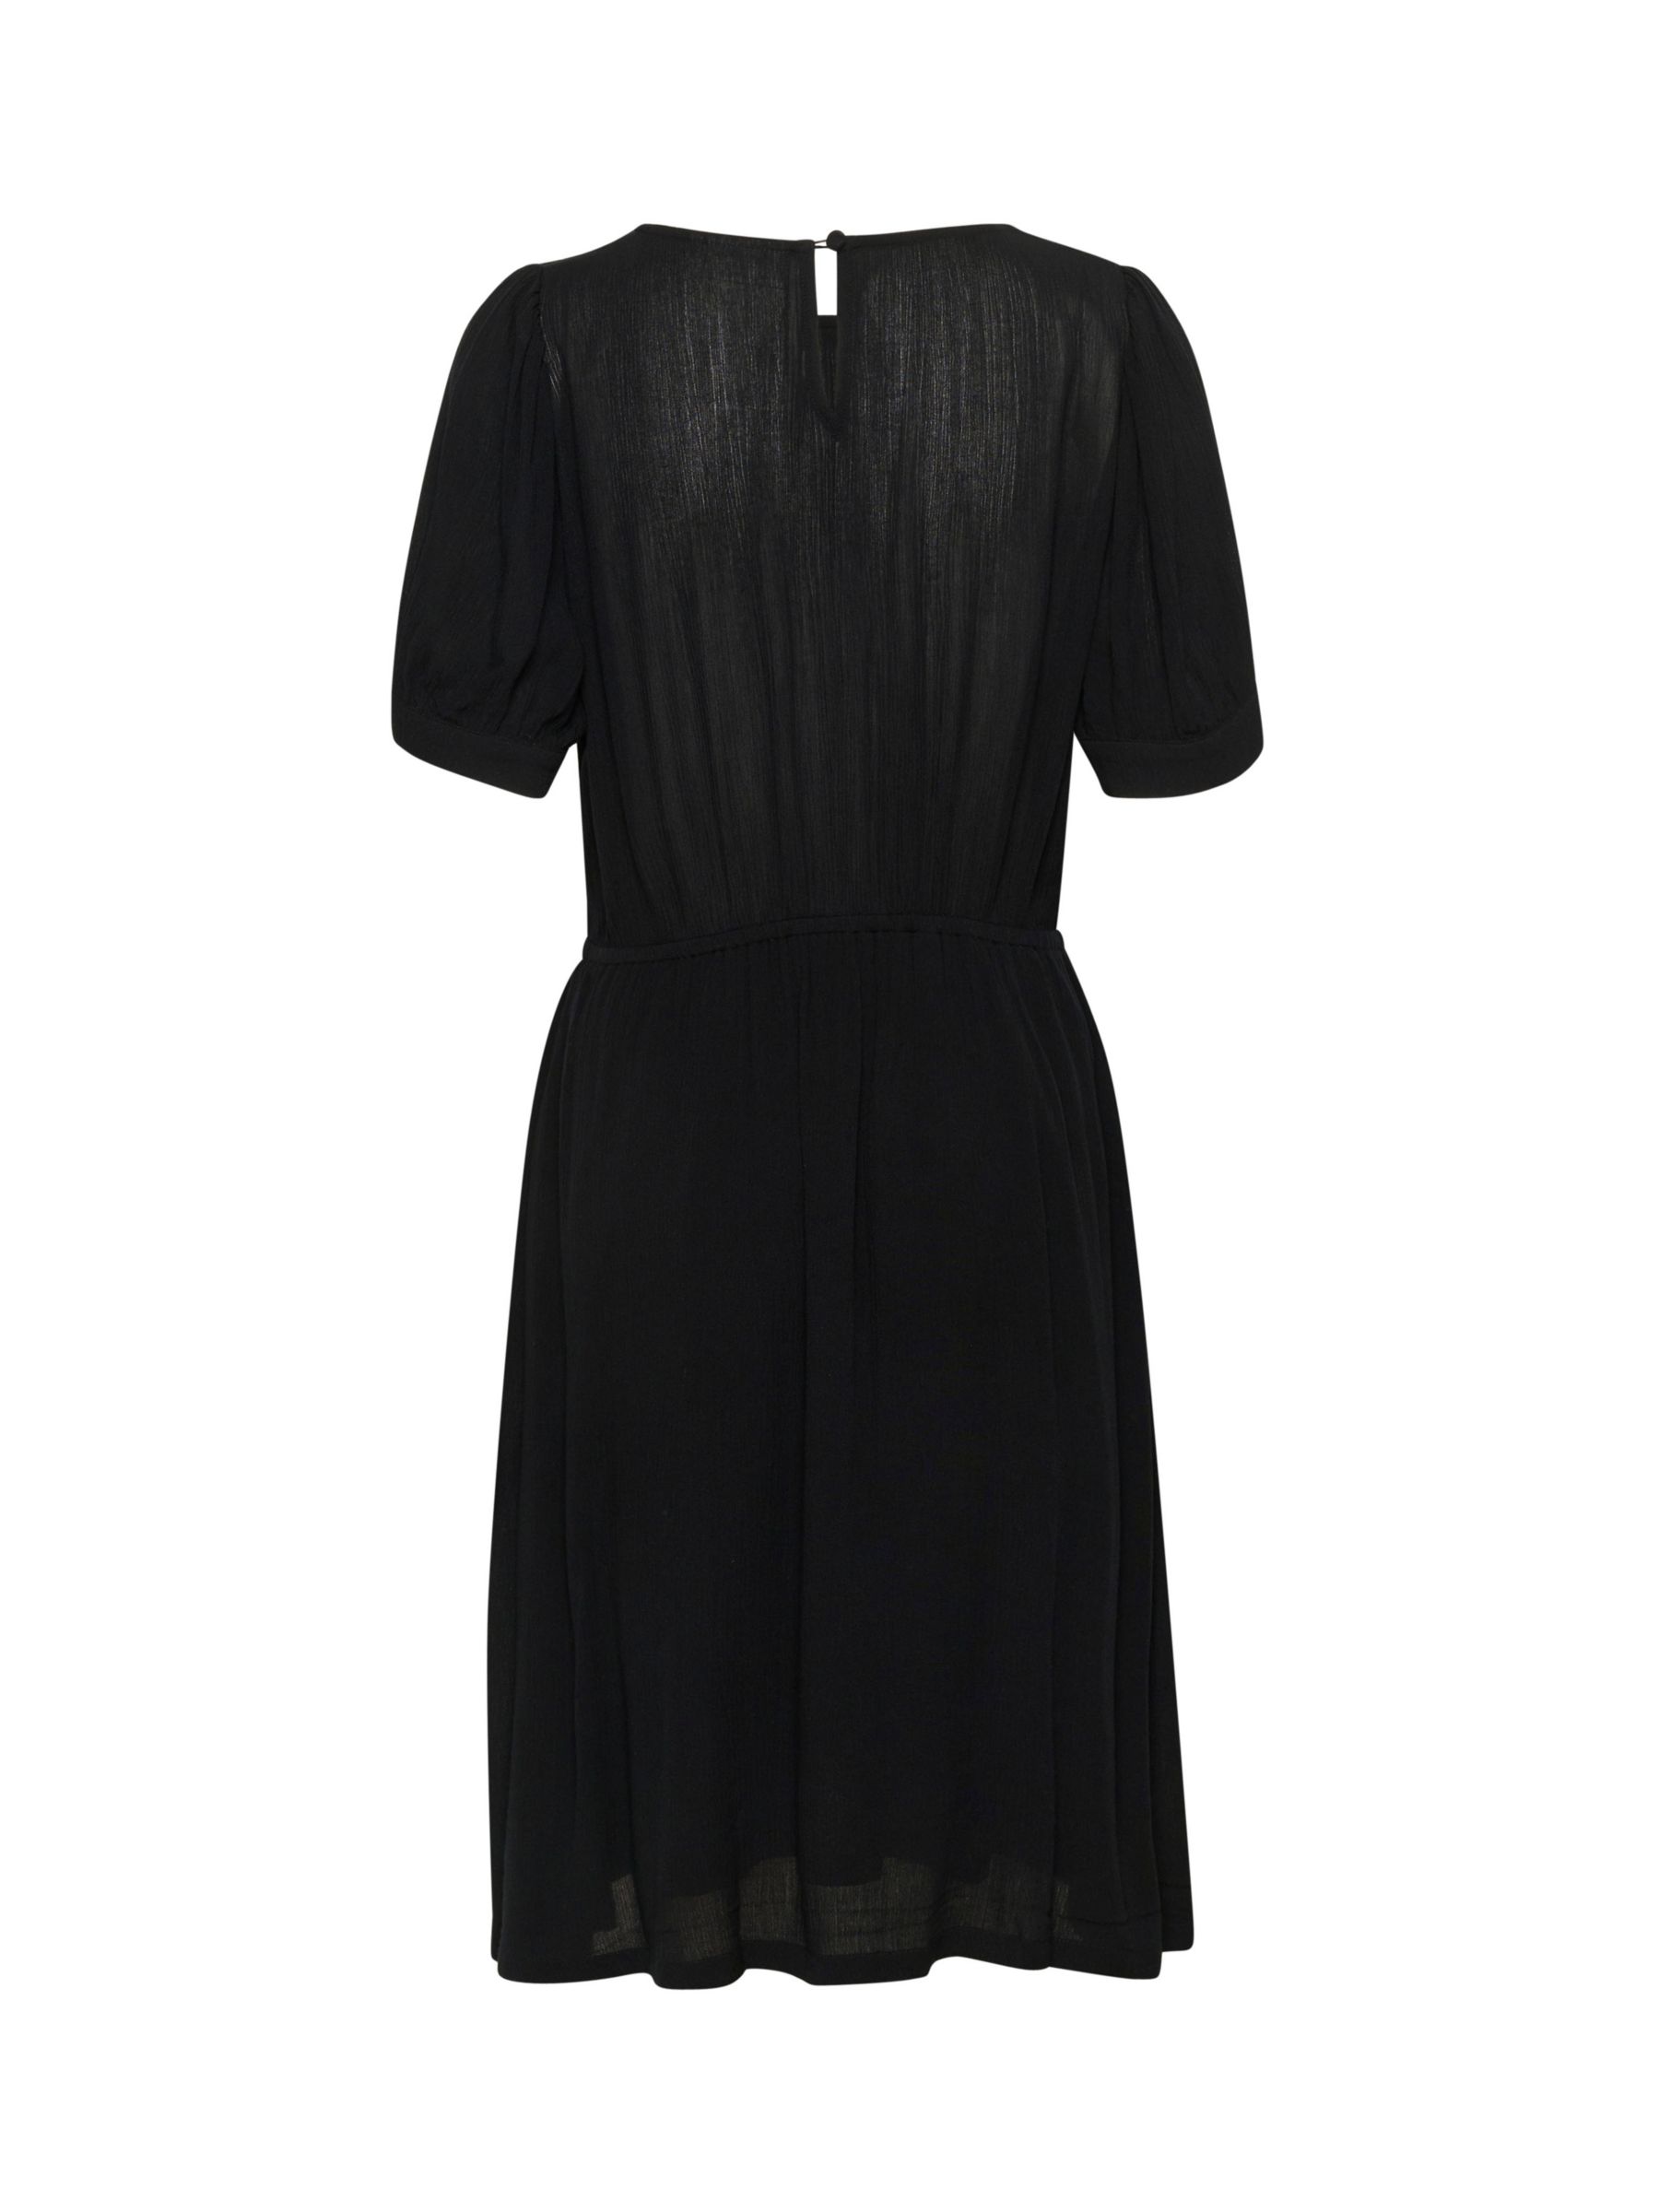 Buy KAFFE Short Sleeve V-Neck Dress Online at johnlewis.com